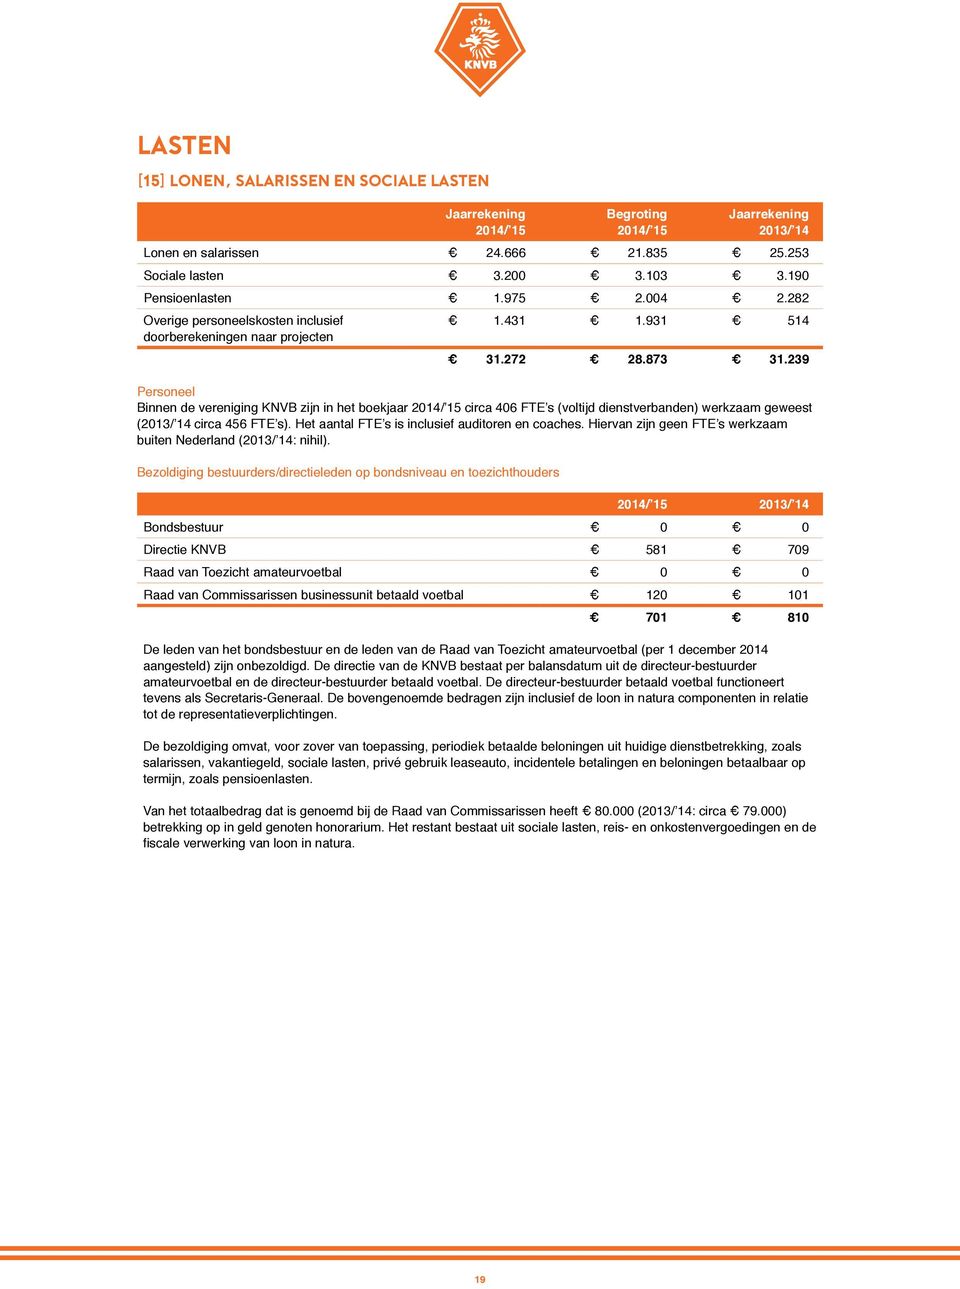 239 Personeel Binnen de vereniging KNVB zijn in het boekjaar 2014/ 15 circa 406 FTE s (voltijd dienstverbanden) werkzaam geweest (2013/ 14 circa 456 FTE s).